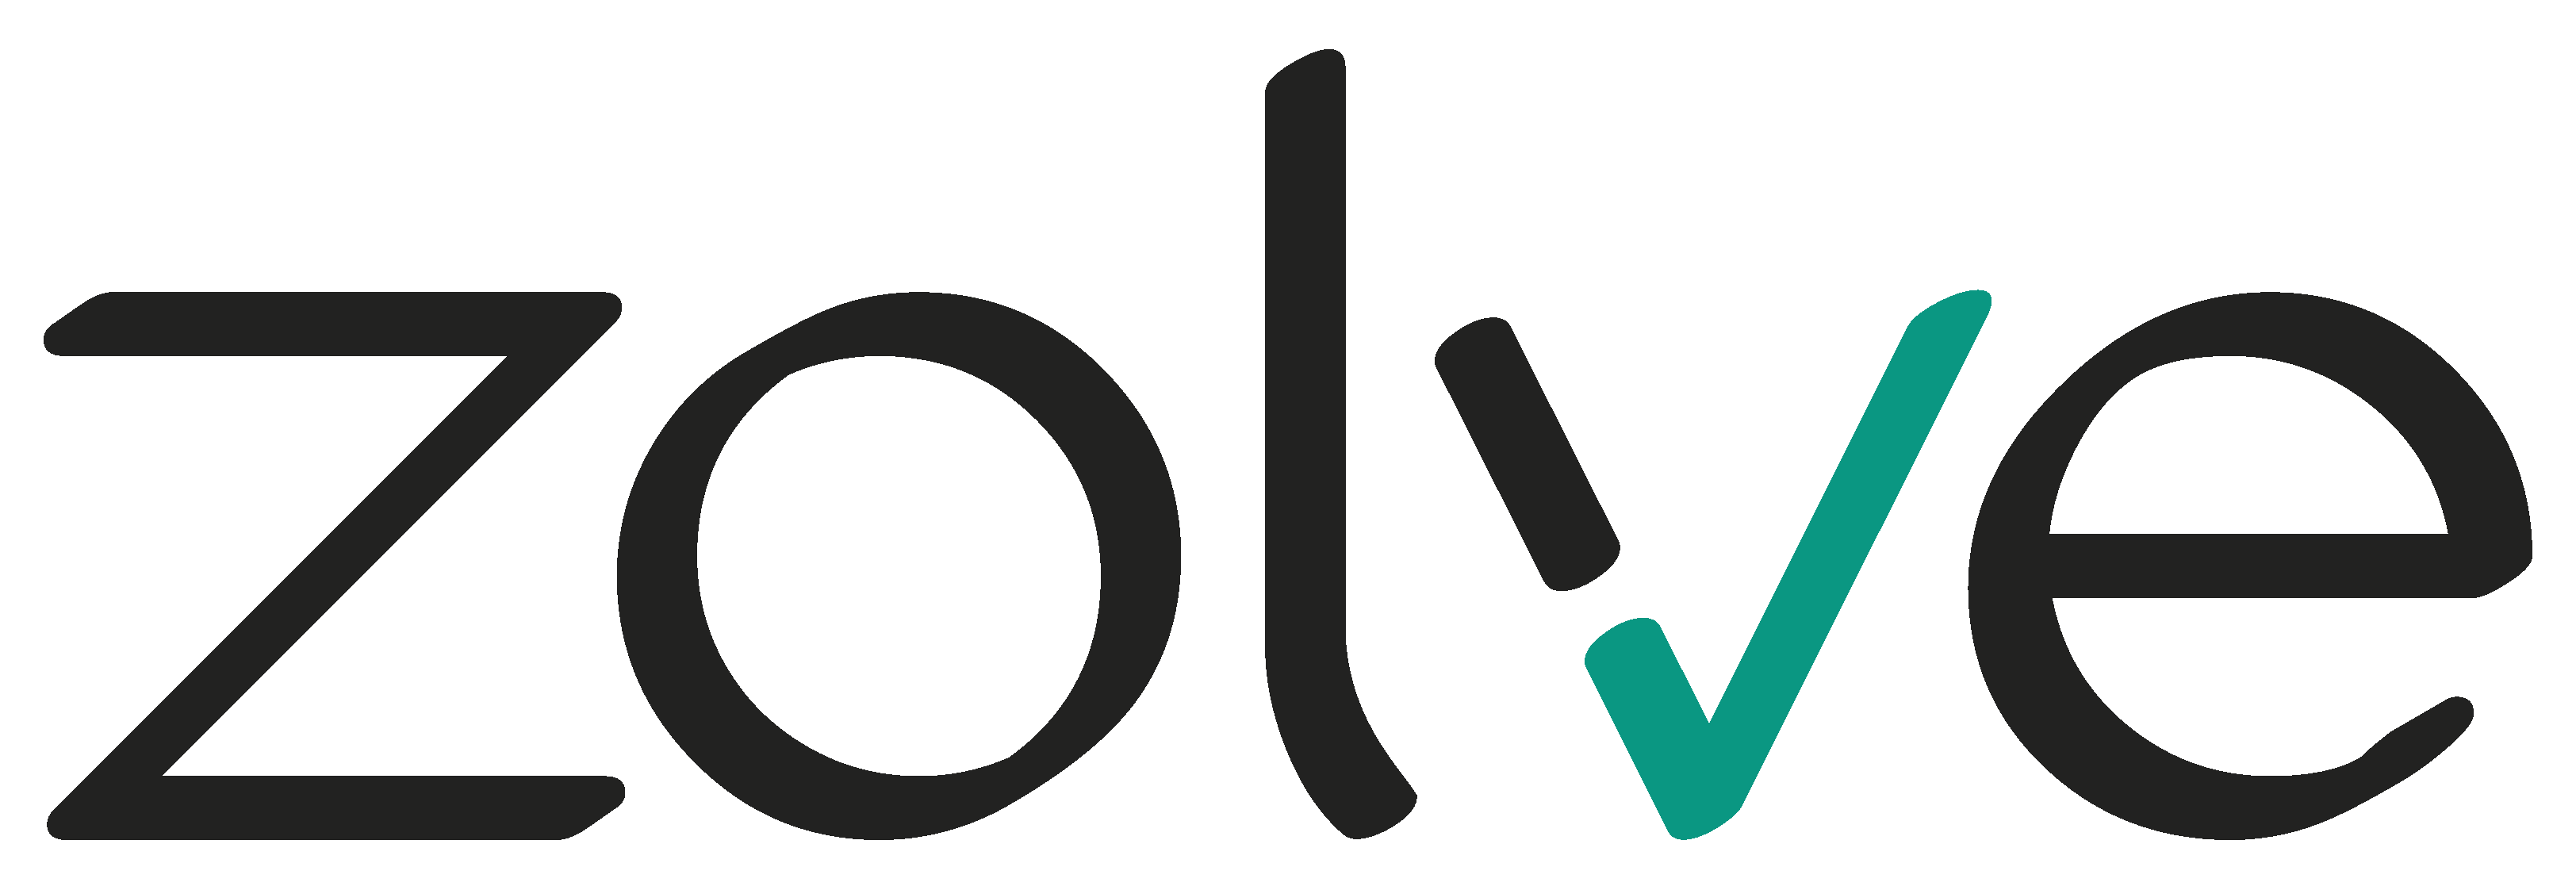 Logo til joblistings/Zolve.png